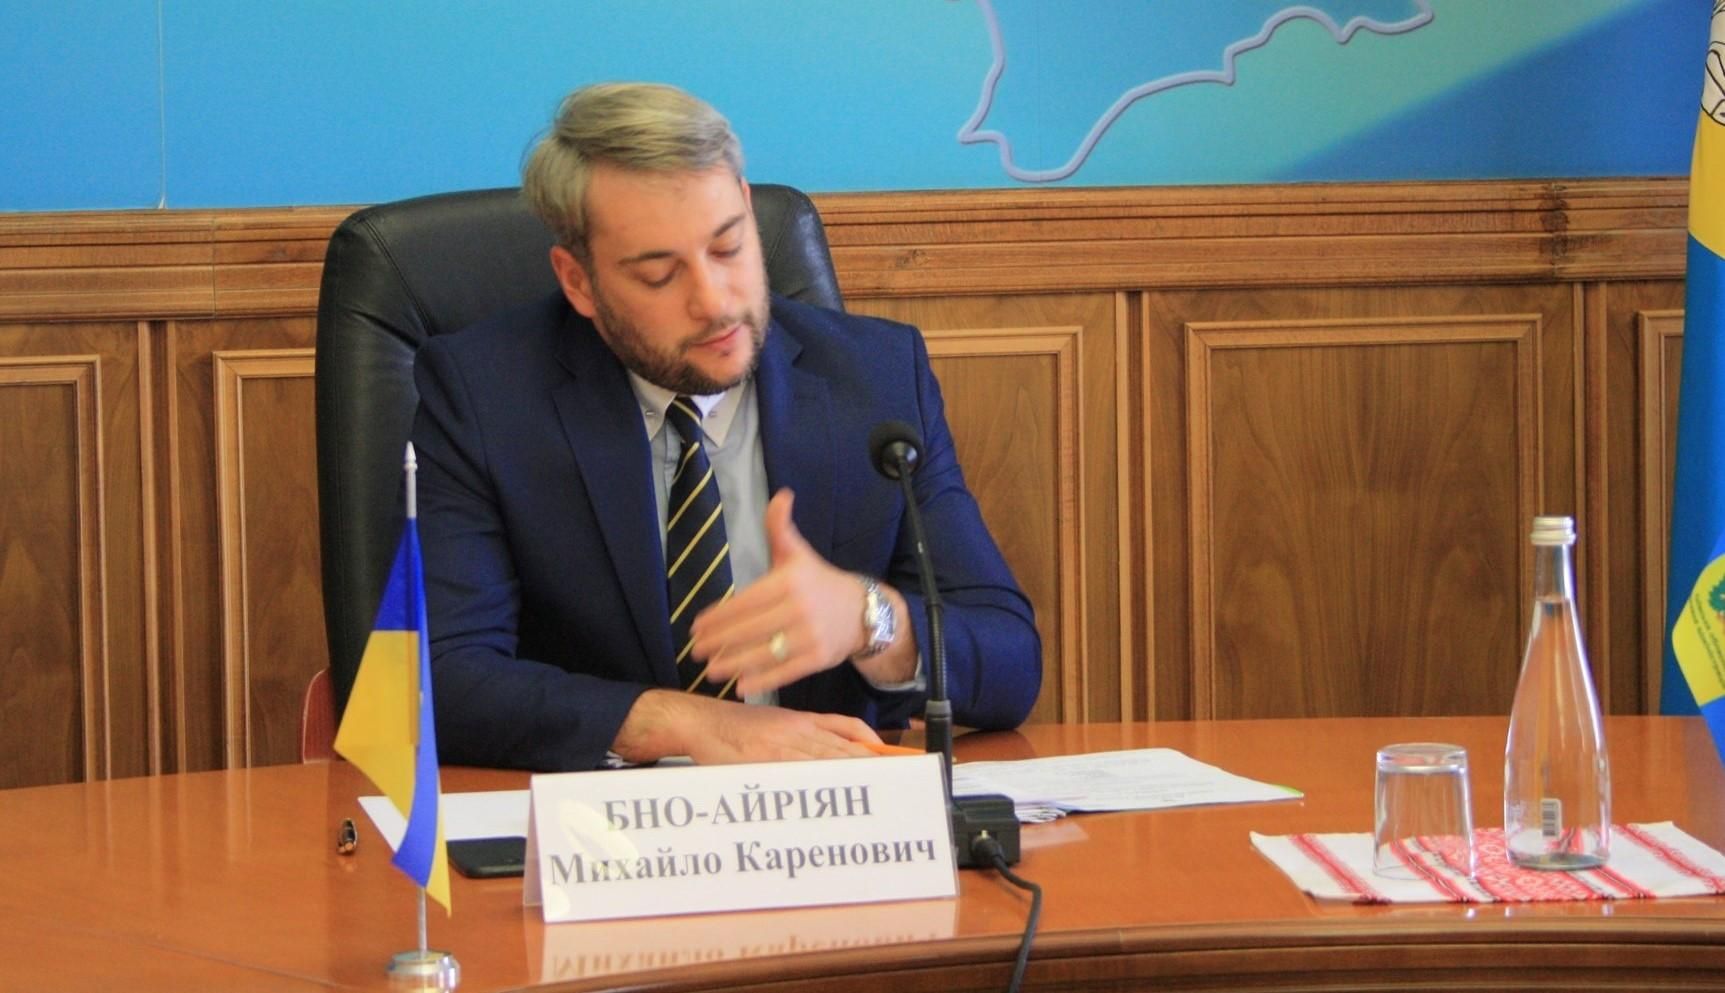 Минуло 100 днів: голова Київської ОДА Бно-Айріян йде у відставку